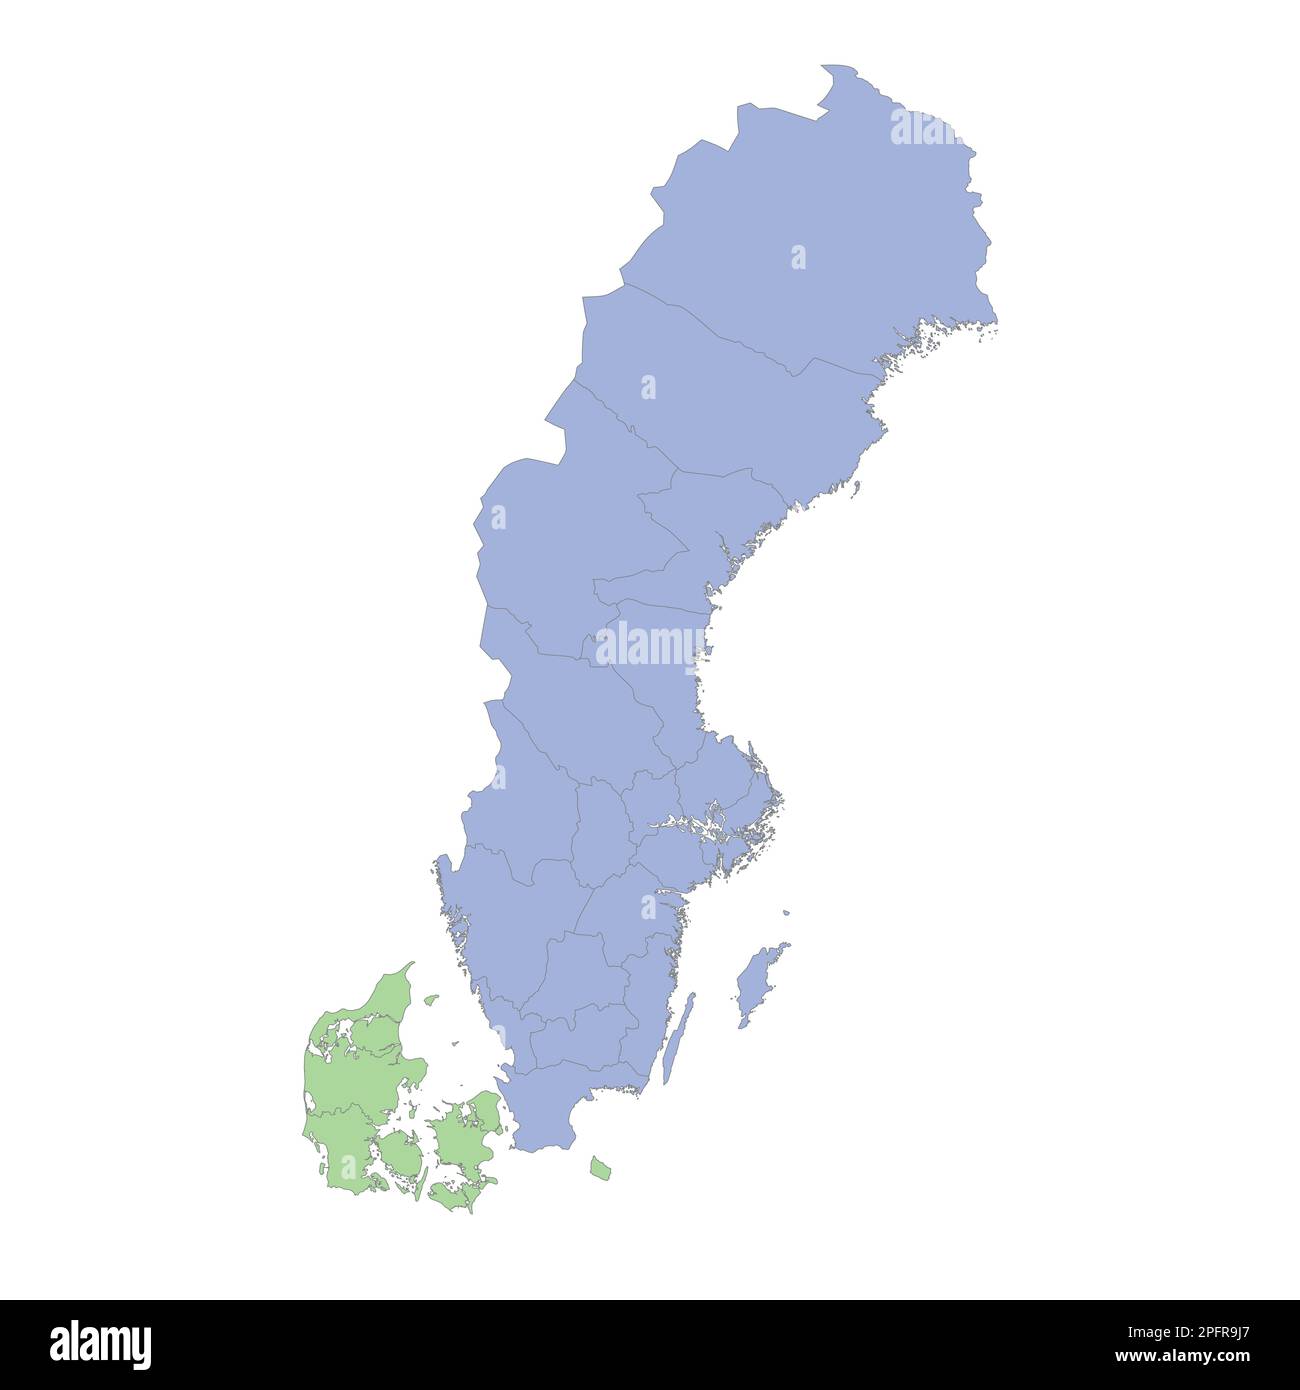 Mappa politica di alta qualità della Svezia e della Danimarca con i confini delle regioni o delle province. Illustrazione vettoriale Illustrazione Vettoriale